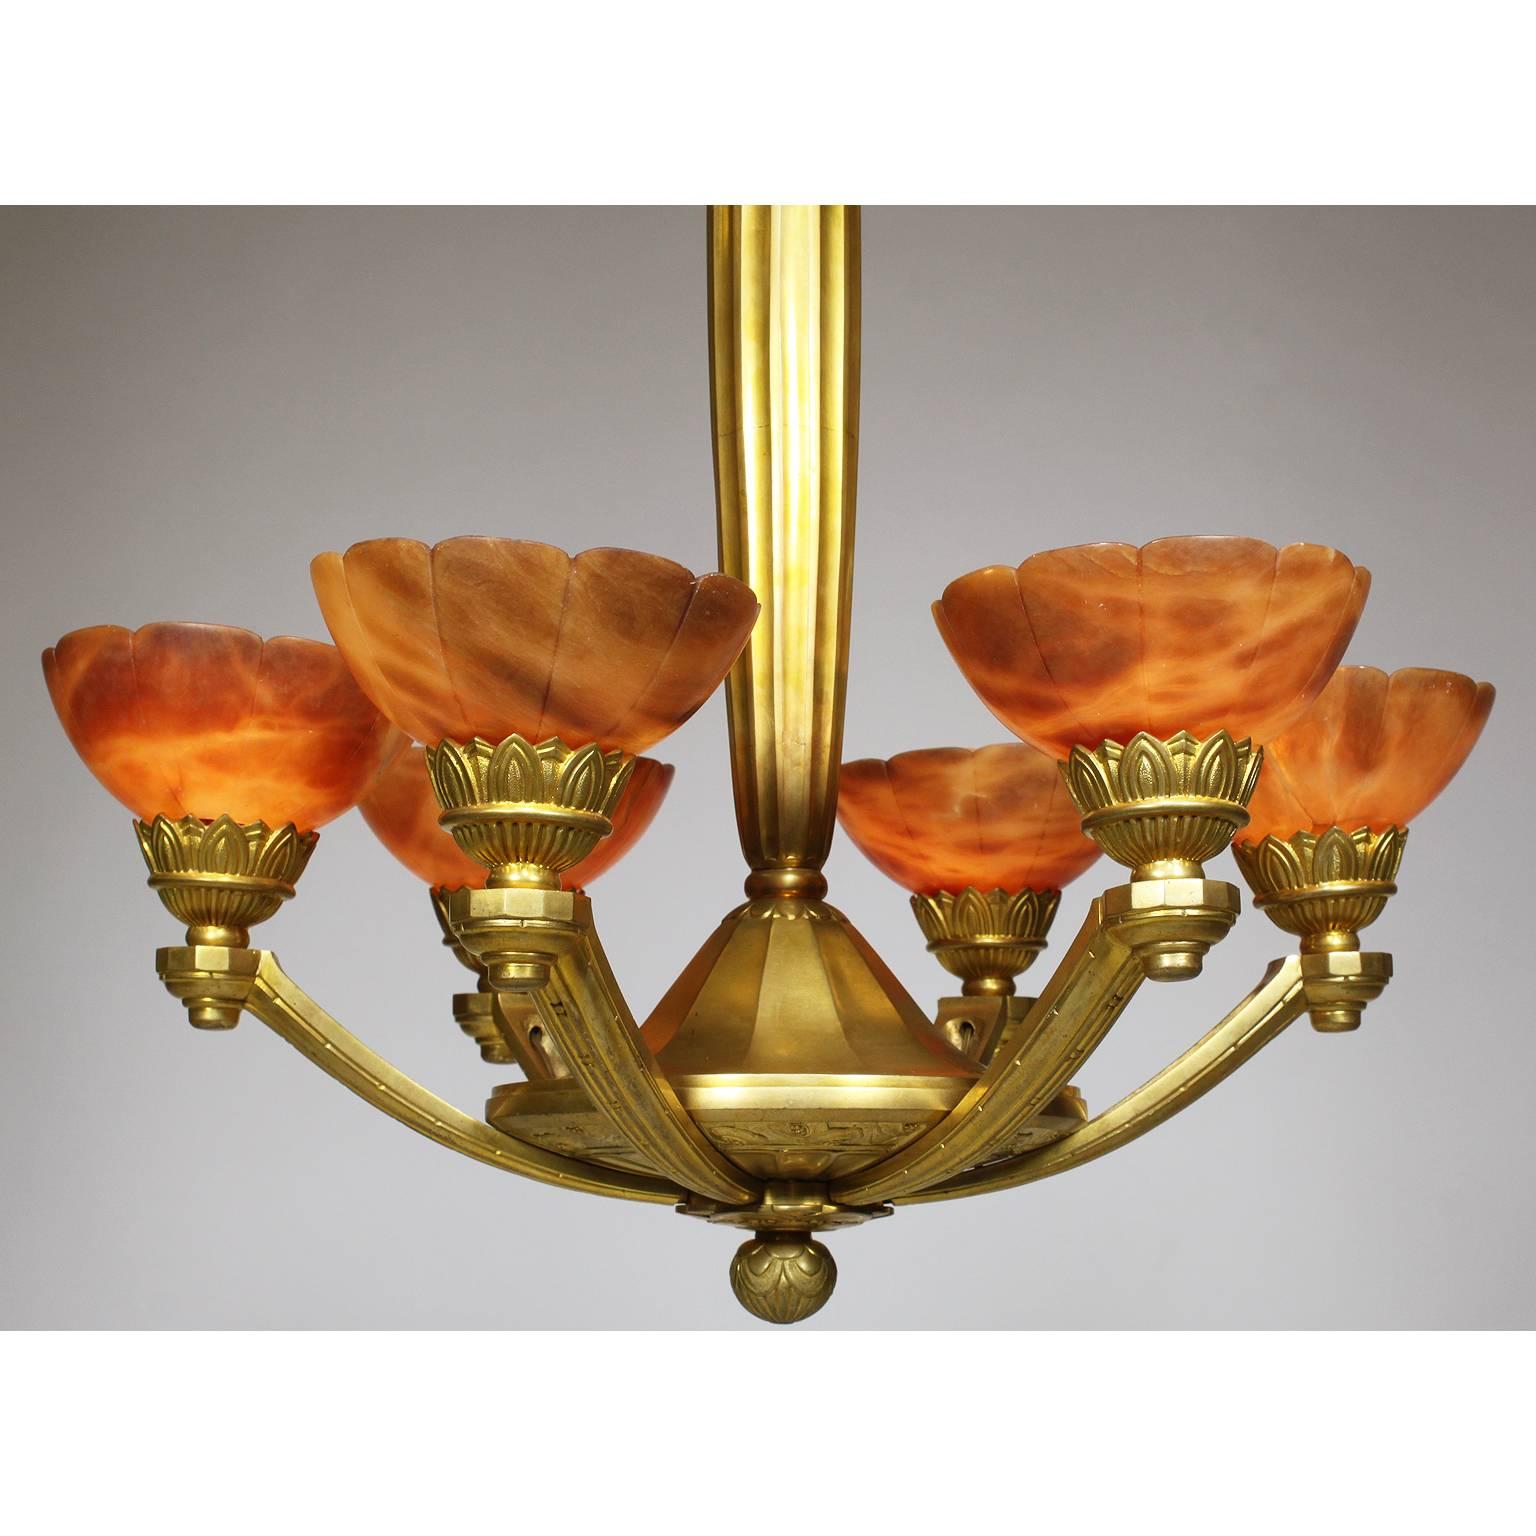 Schöner und seltener französischer Art-Deco-Kronleuchter aus vergoldeter Bronze und bernsteinfarbenem Alabaster mit sechs Lichtern, Paris, um 1920.

Maße: Höhe: 37 1/4 Zoll (94,6 cm)
Breite: 24 Zoll (60,1 cm)

Ref.: A1803 - Los 10718.